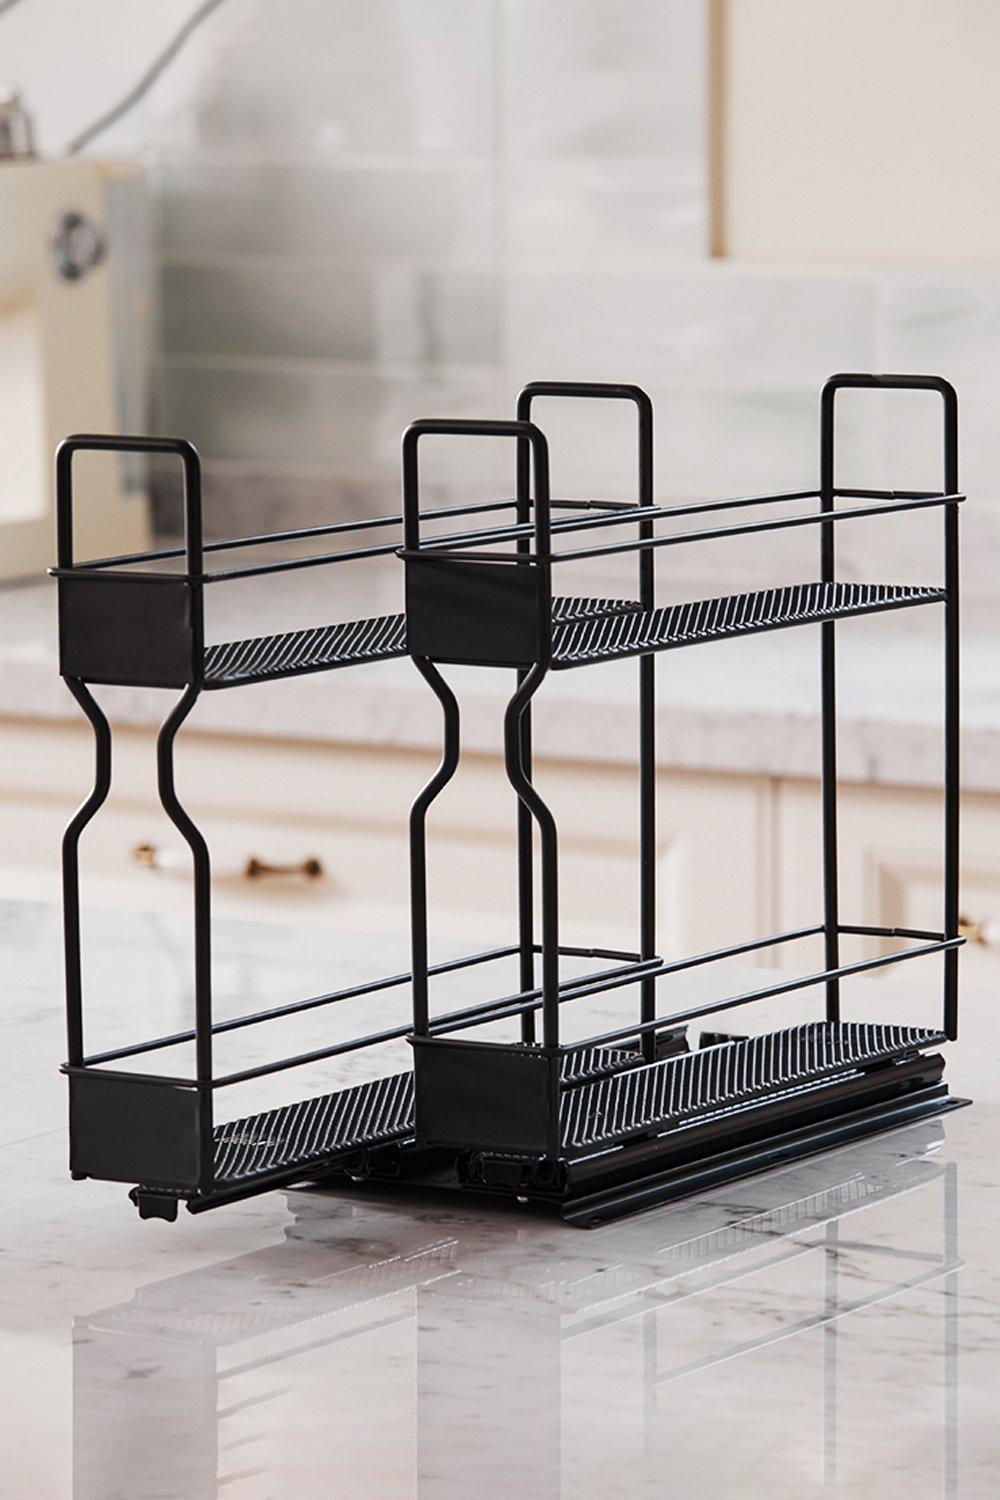 2-Tier&2-Row Metal Spice Rack Slide-Out Kitchen Storage Holder Shelf Cabinet Organizer